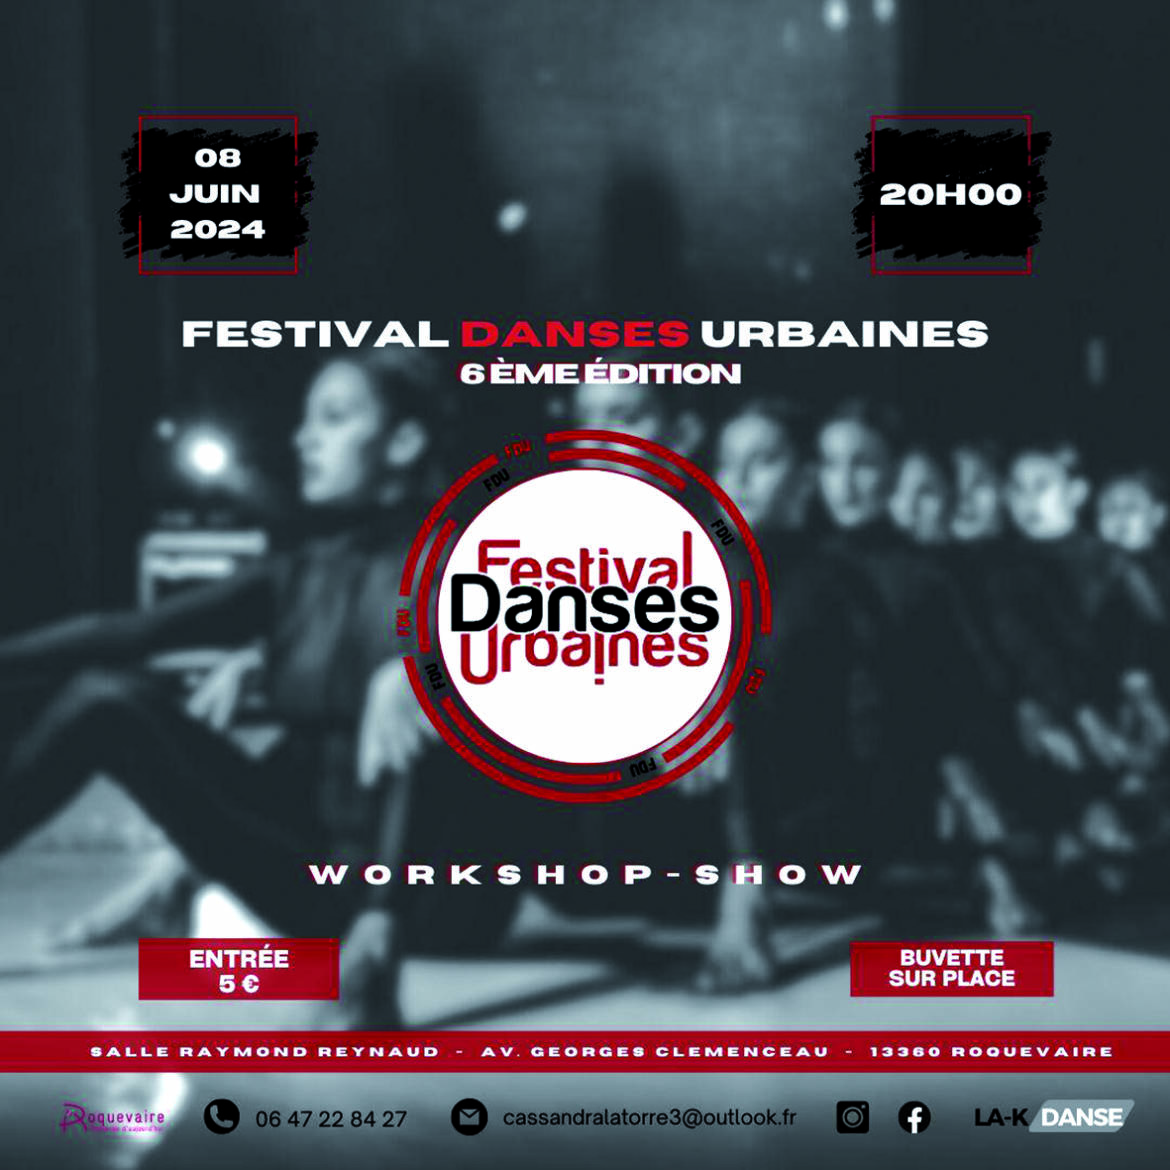 2024_aff-festival-danses-urbaines-08juin.jpg